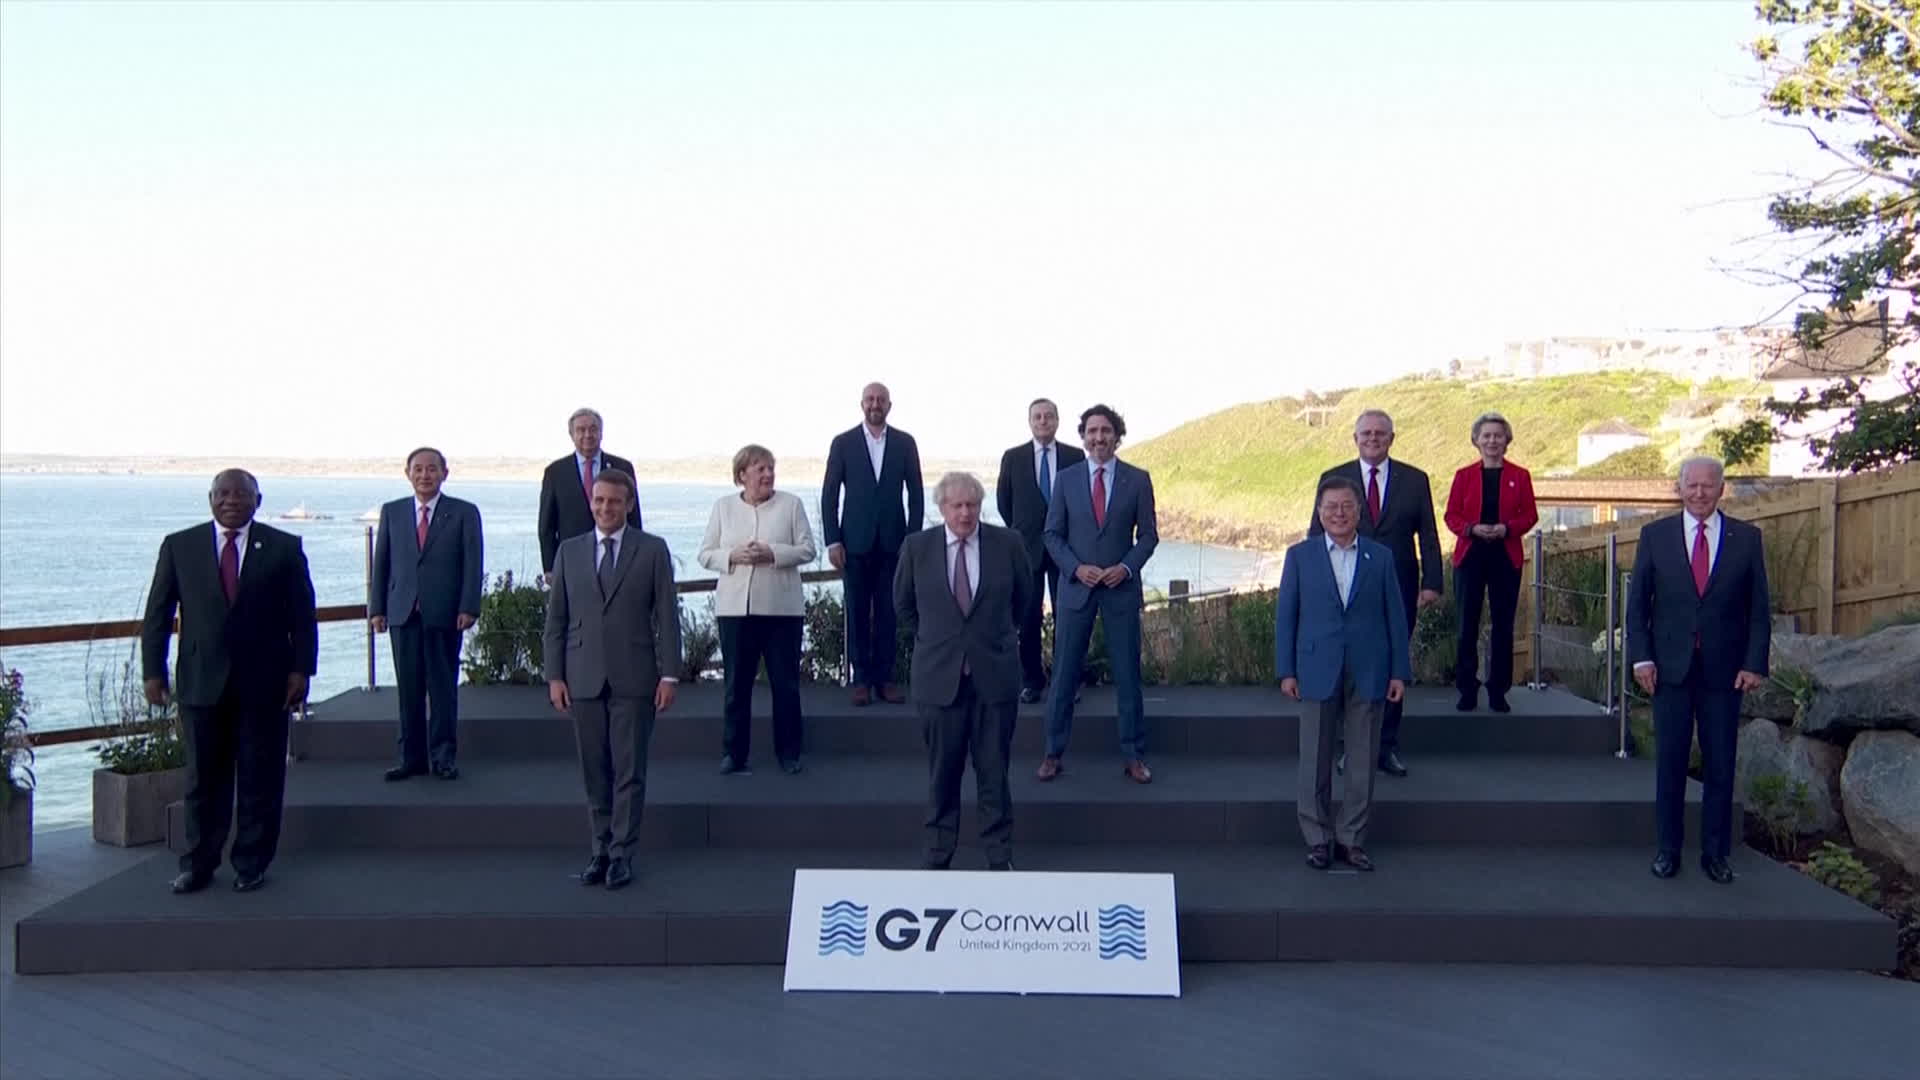 영국 콘월에서 G7 정상회의 기념촬영. 왼쪽에서 두번째에 스가 요시히데 일본 총리가, 오른쪽에서 4번째에 문재인 대통령 이 서 있다